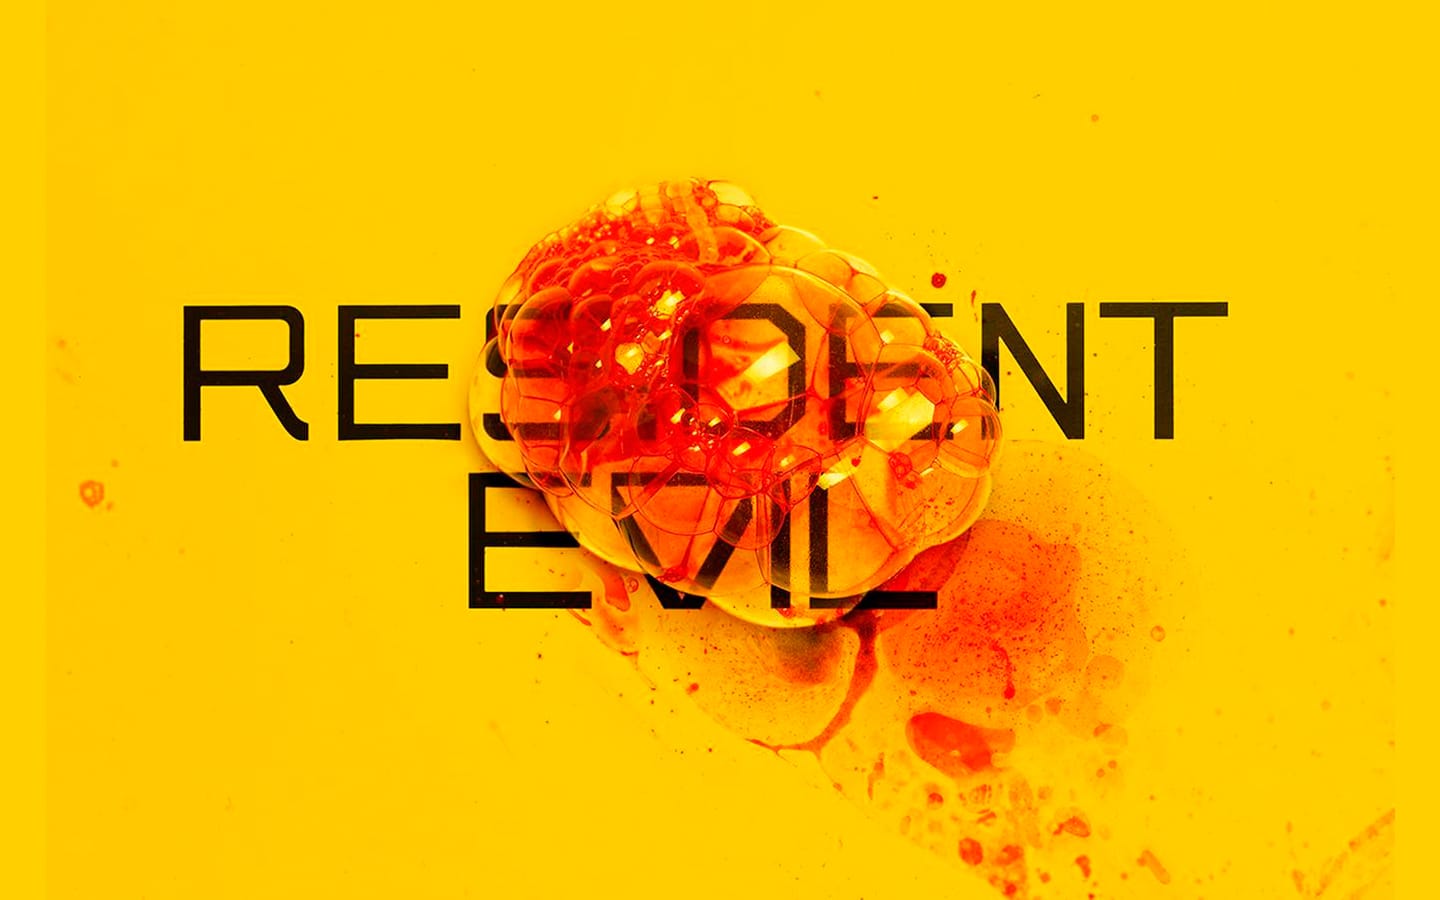 La nueva serie Live-Action de Resident Evil se estrenará el 14 de julio en Netflix